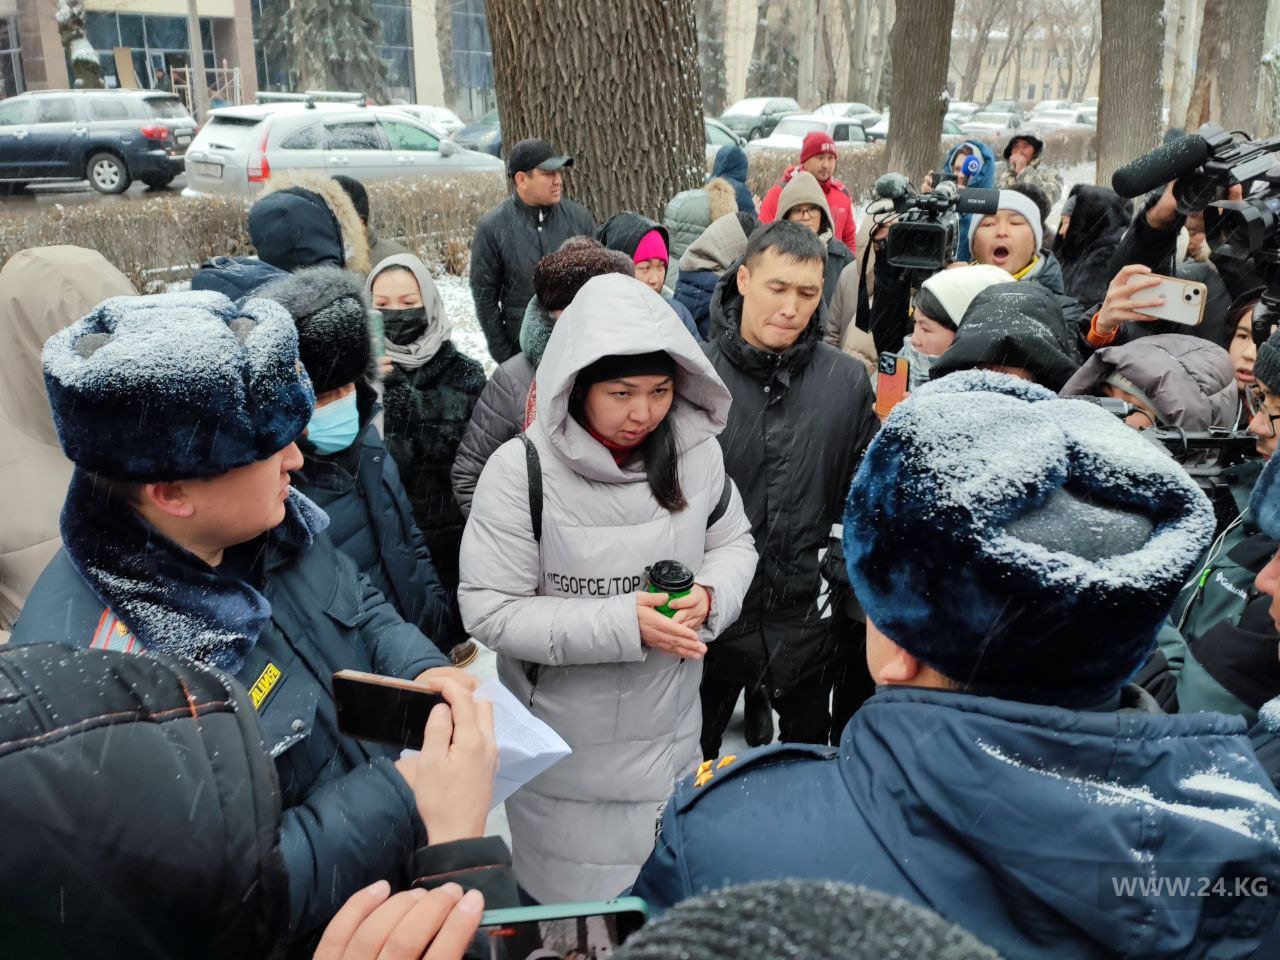 Марш за законность. Суд вновь запретил массовые собрания в центре Бишкека